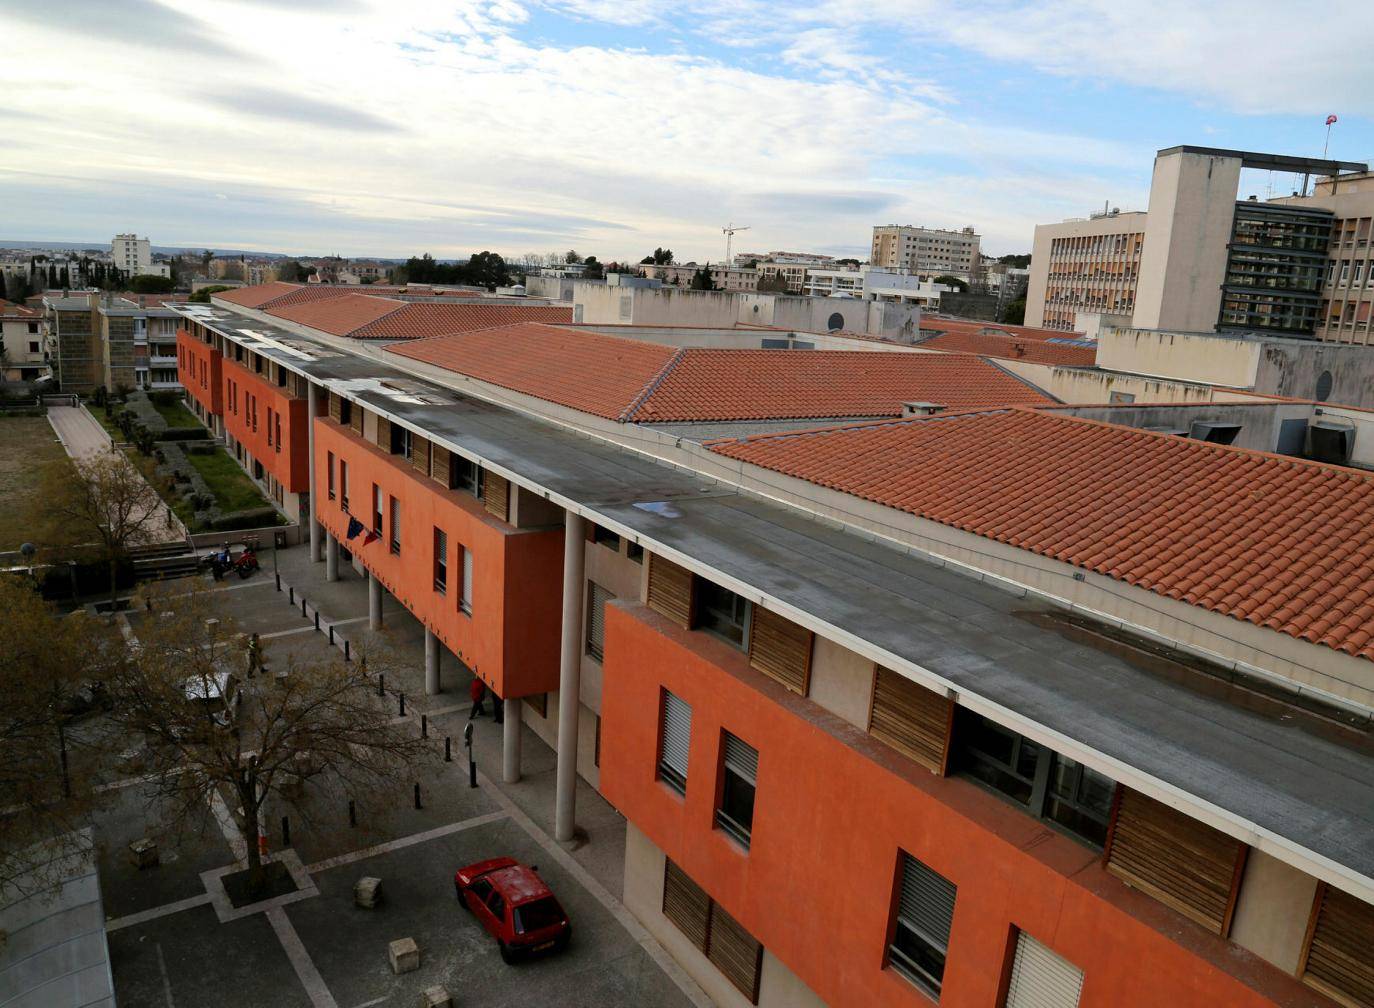 L'hôpital d'Aix recrute : job dating virtuel jeudi 15 décembre